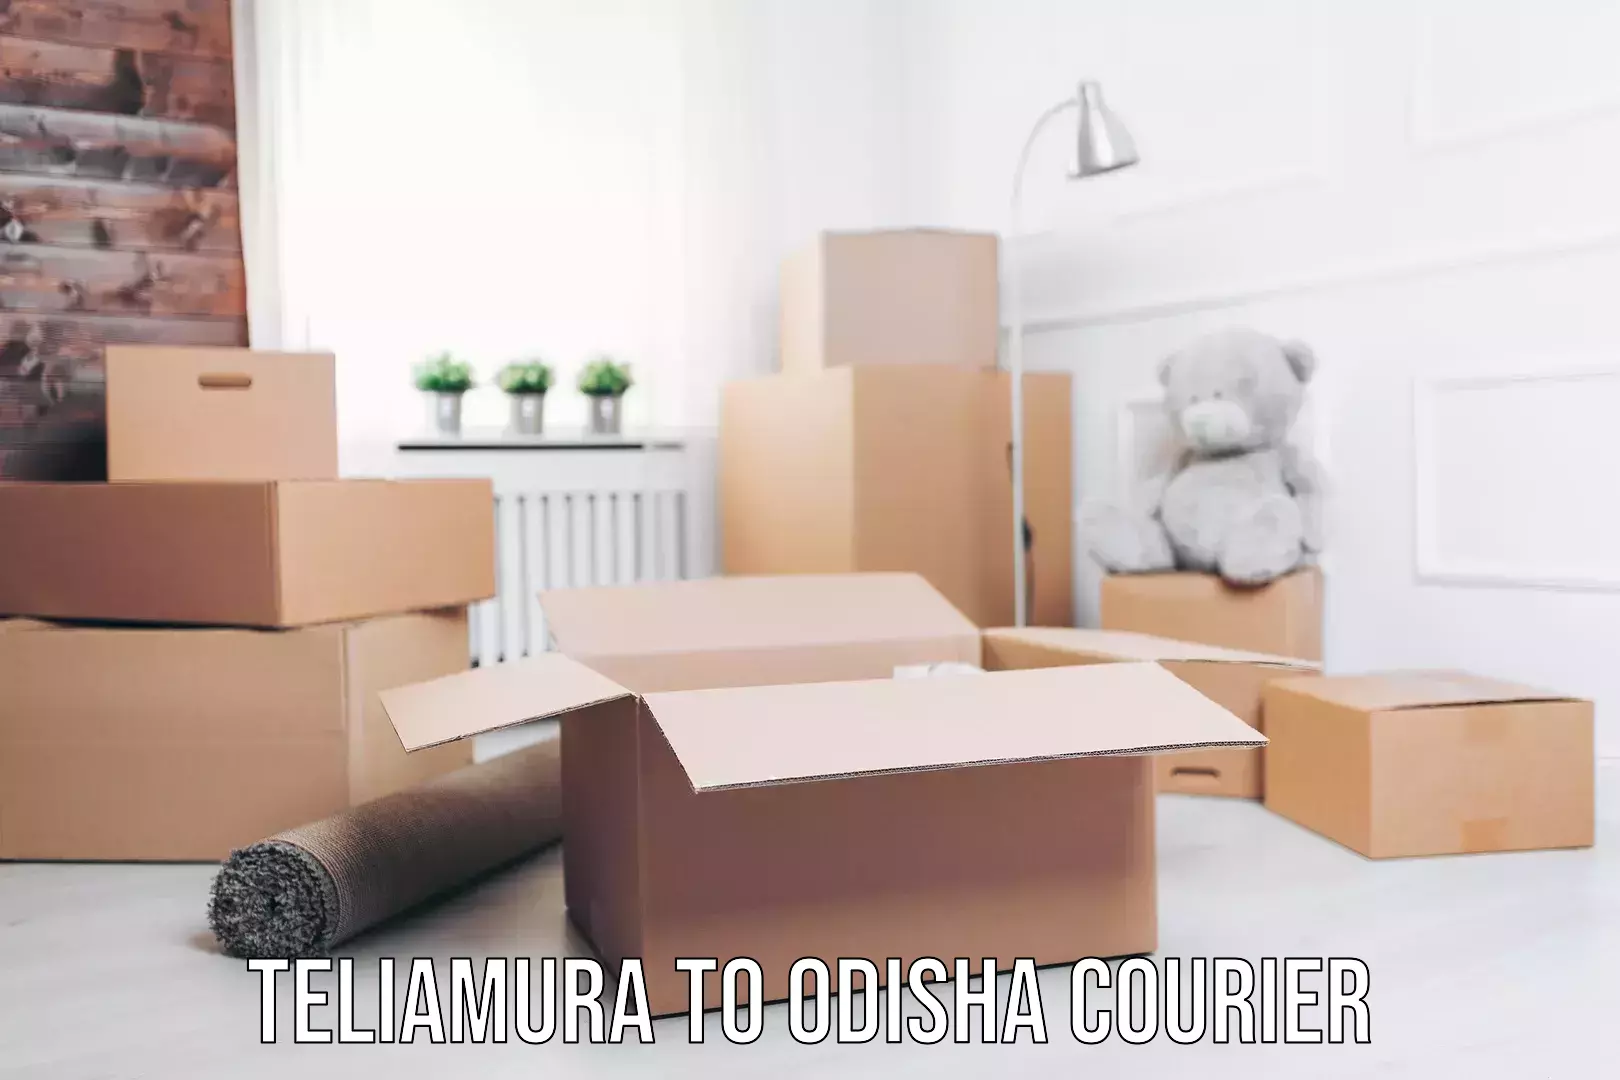 User-friendly delivery service Teliamura to Odisha